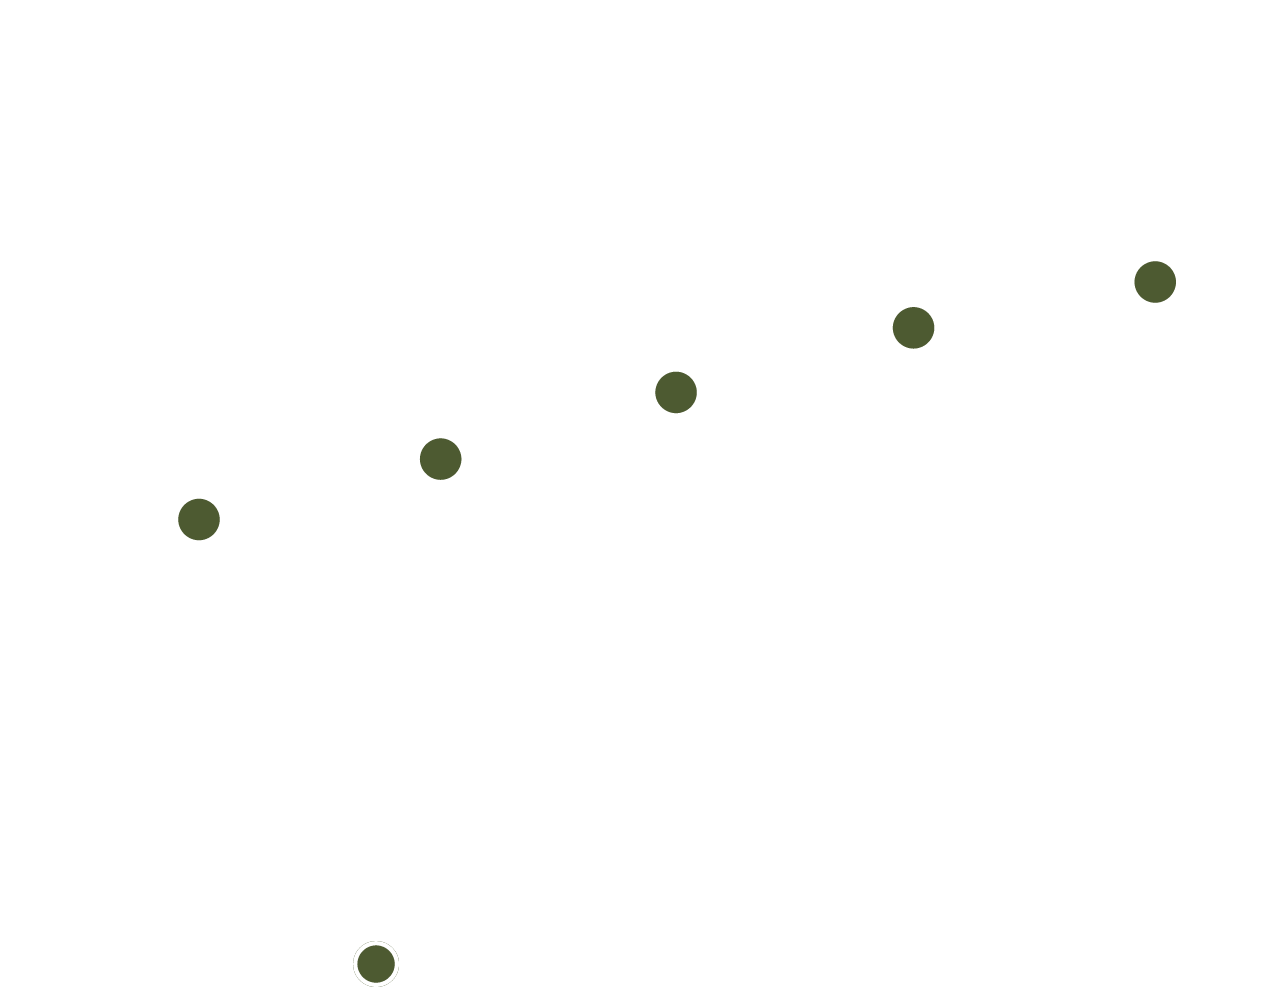 
Diese Grafik zeigt die Rentabilität von Unternehmen mit ESG-Rating, unterteilt in Quintile. Die Y-Achse gibt die Bruttorentabilität in Form des Z-Score an und reicht von -0,2 bis 0,2. Die X-Achse gibt Q1 bis Q5 in diskreten Werten an. Die vertikalen Balken über Q1 bis Q5 repräsentieren einen Bereich von 5 % bis 95 % der beobachteten Werte. Jede Linie hat einen grünen Punkt, der den Mittelwert darstellt, und einen weißen Punkt, der den aktuellen Wert darstellt. 
